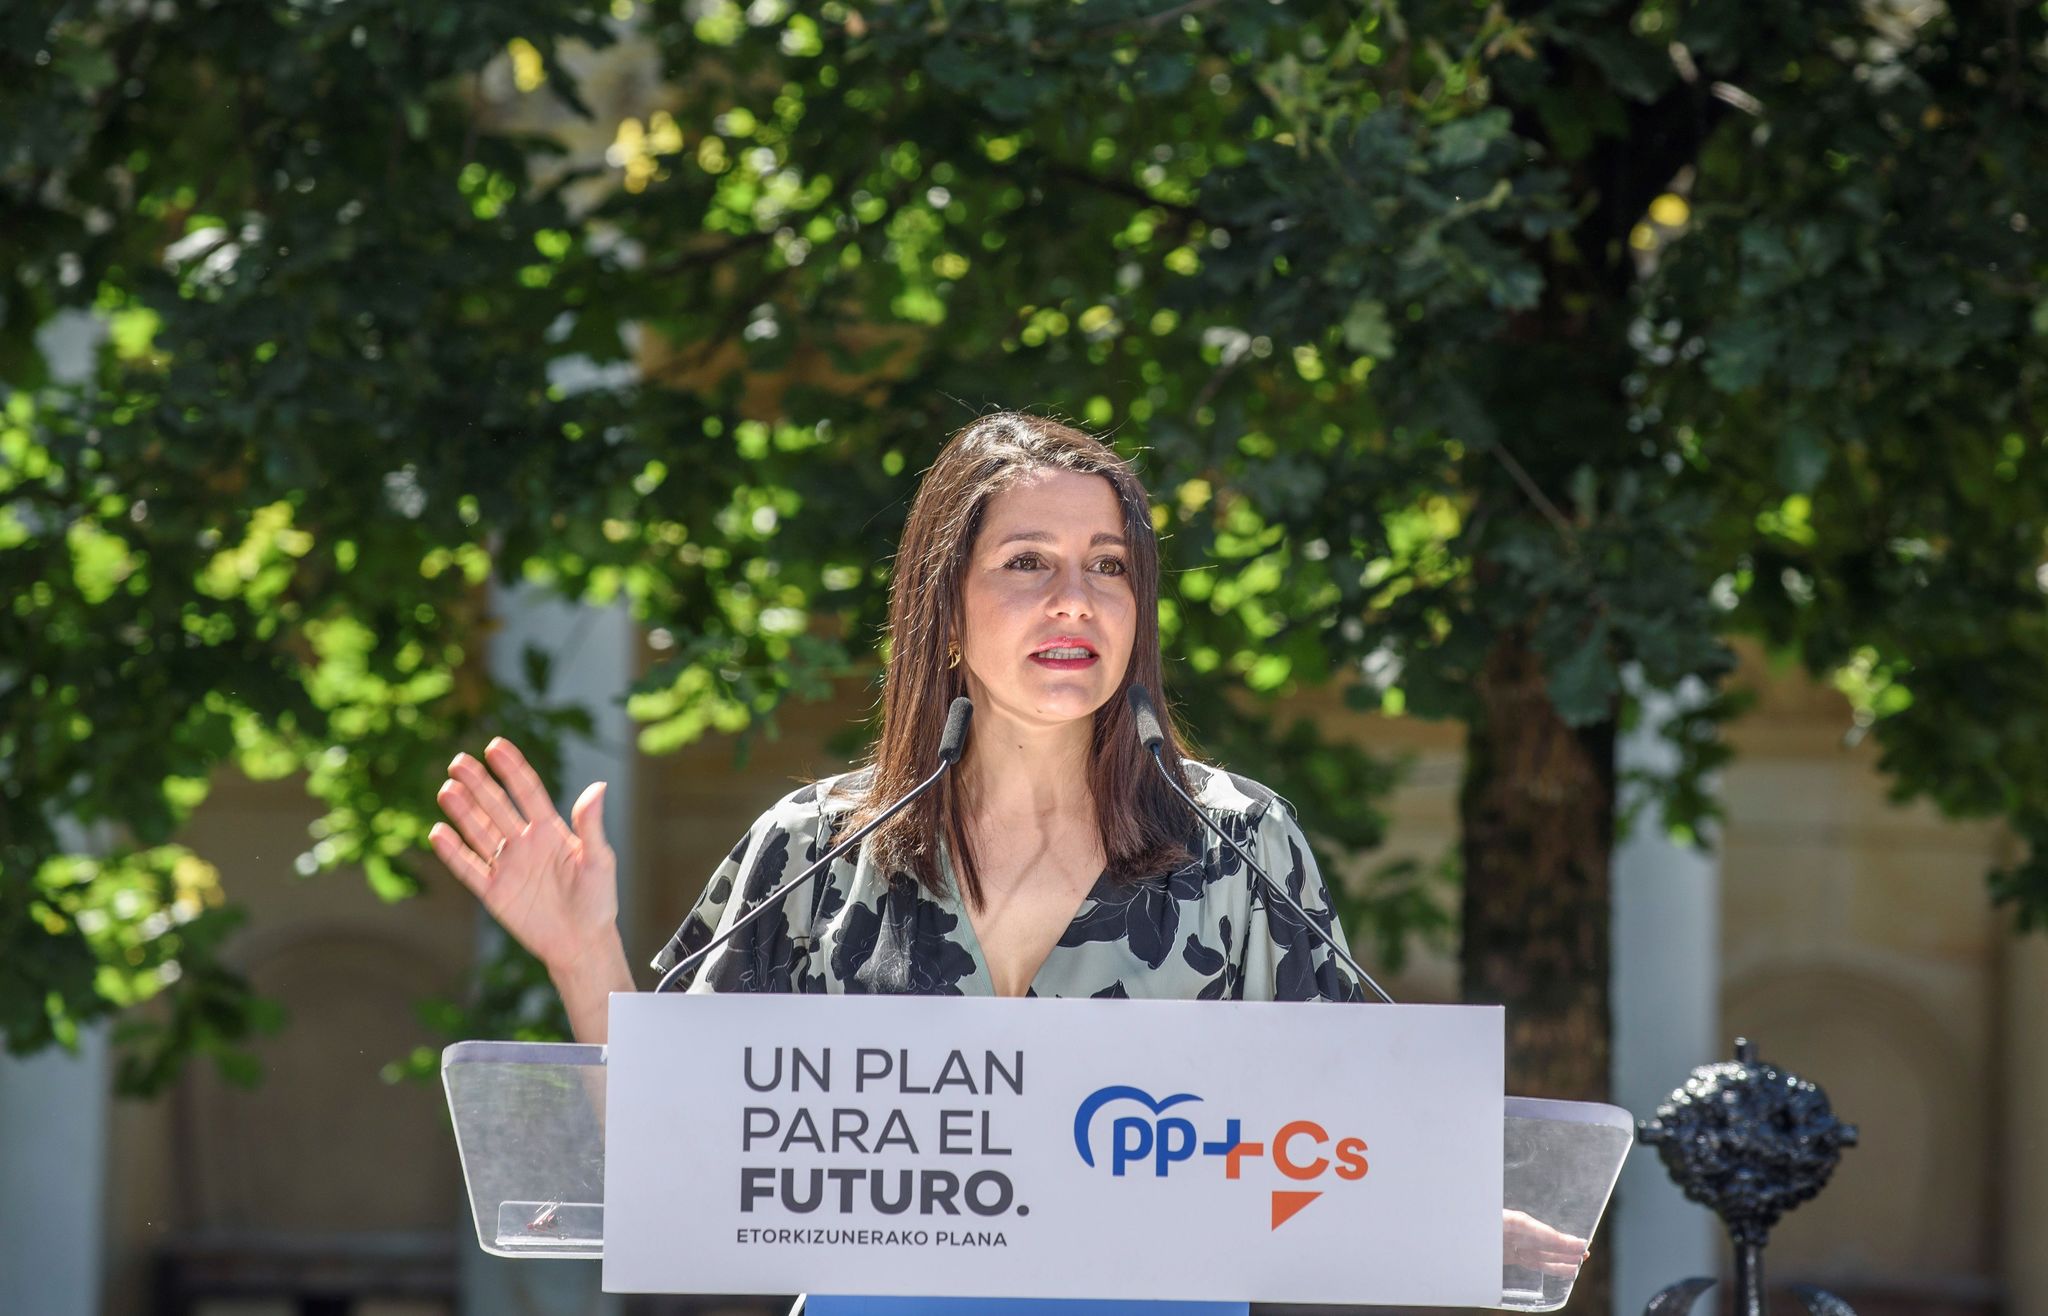 La presidenta de Ciudadanos, Ins Arrimadas, en un acto, el 5 de julio, en Guernica (Vizcaya).